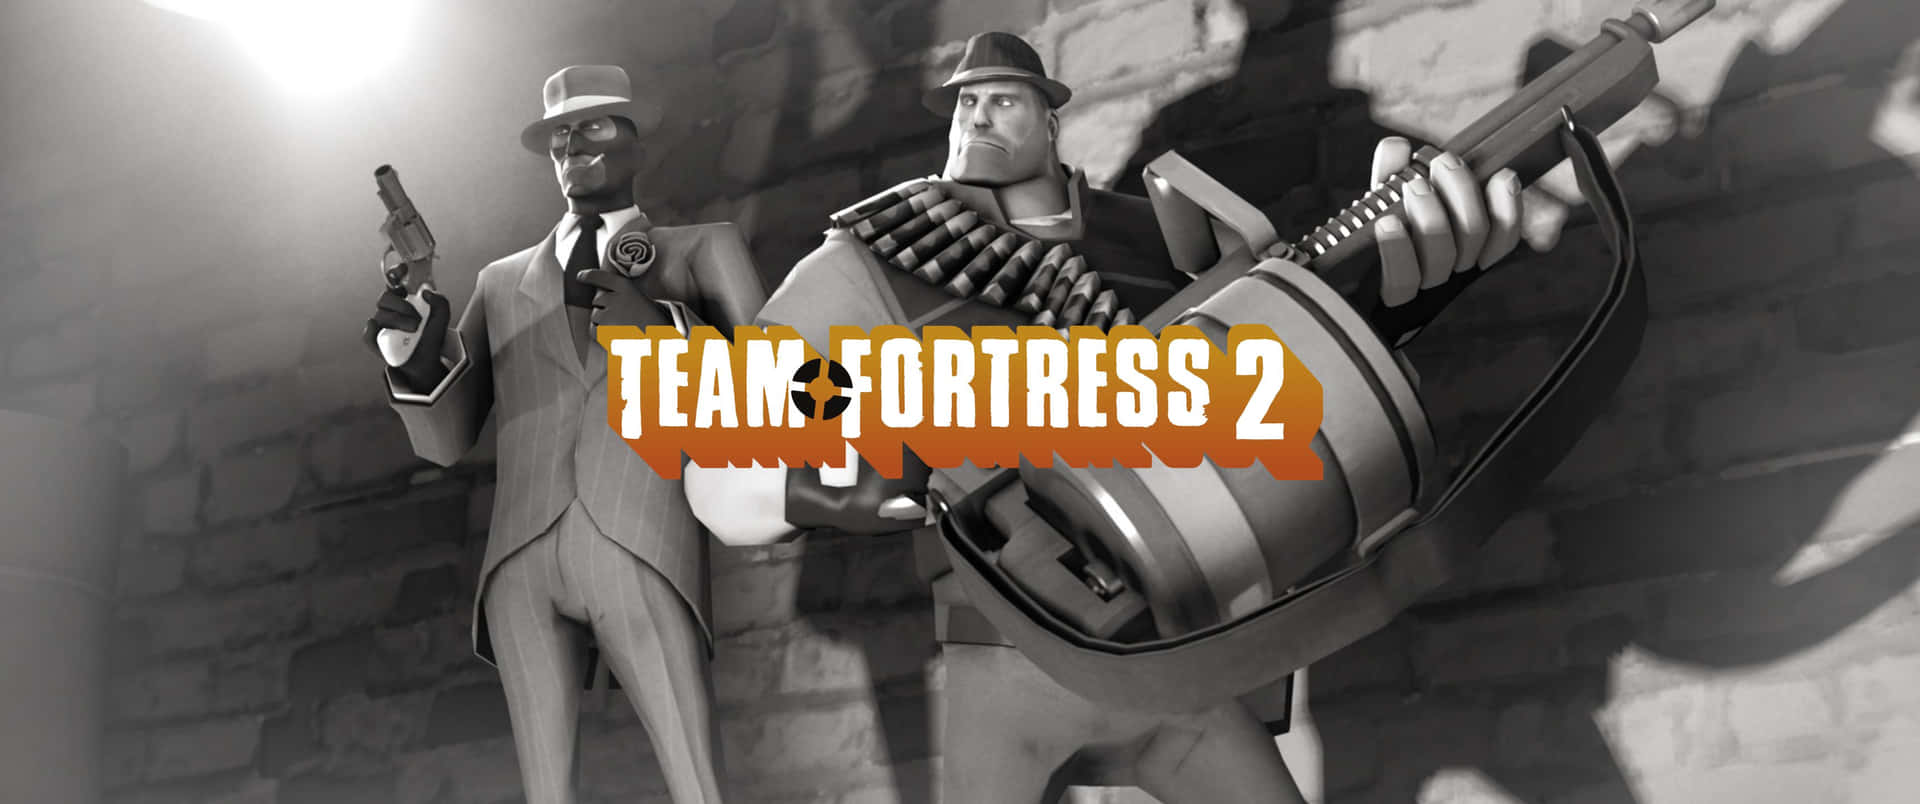 Unosfondo Ispirato Al Popolare Videogioco, Team Fortress 2